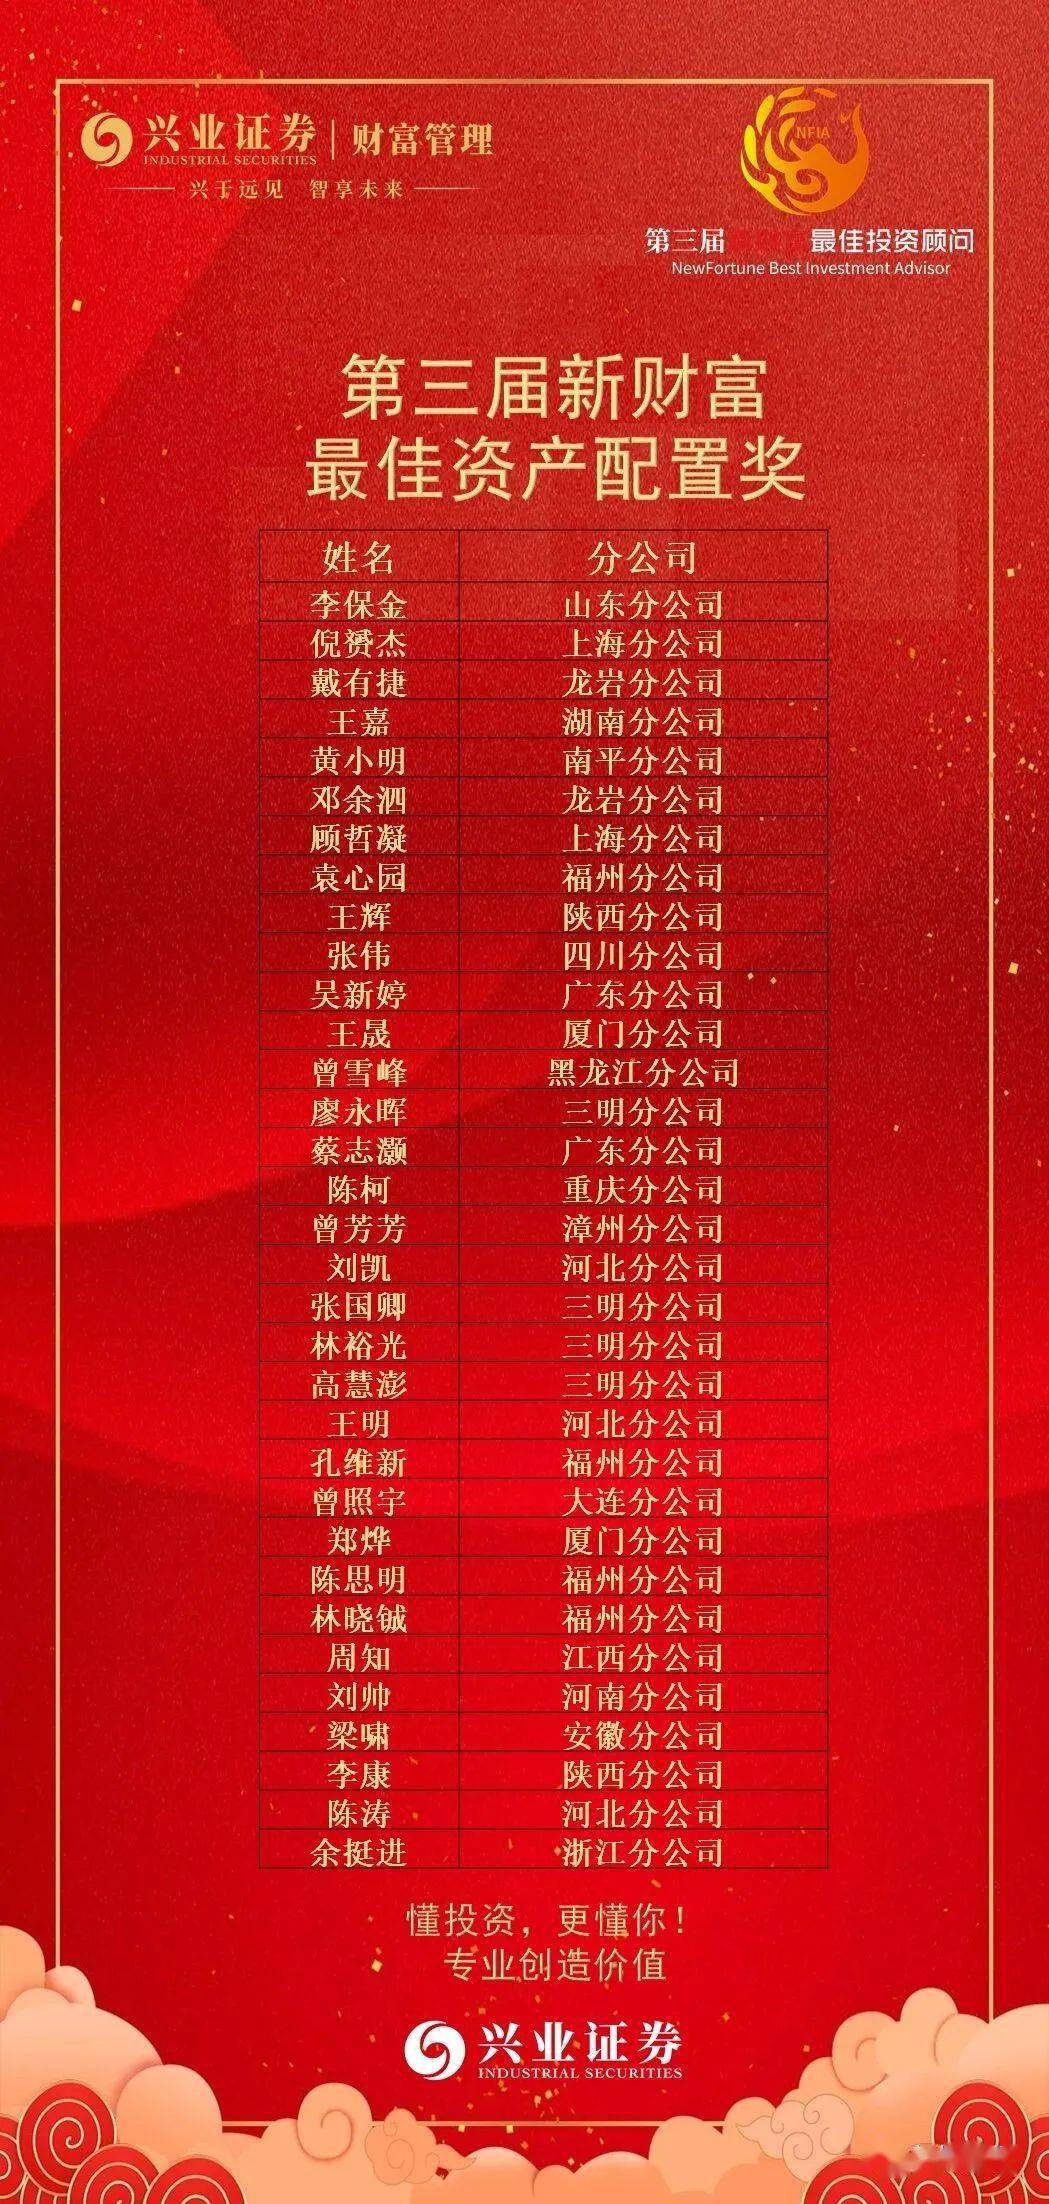 热烈祝贺吴新婷荣获2020新财富最佳投资顾问 最佳资产配置奖 全国43名,广东第5名